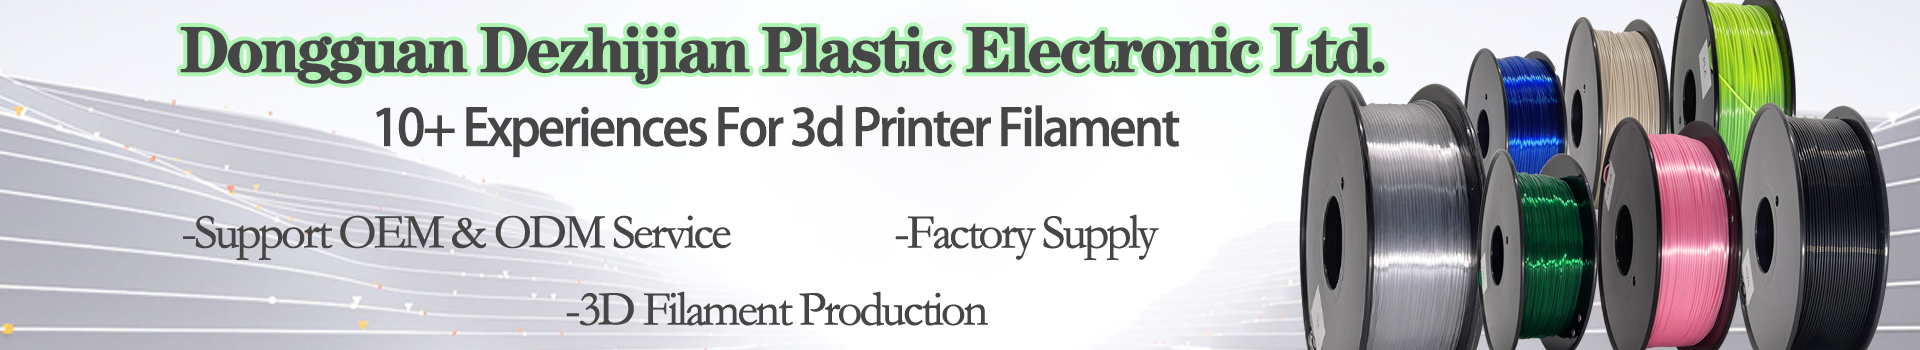 PINRUI High Quality 1kg 3d PLA Printer Filament Transparent Green Color